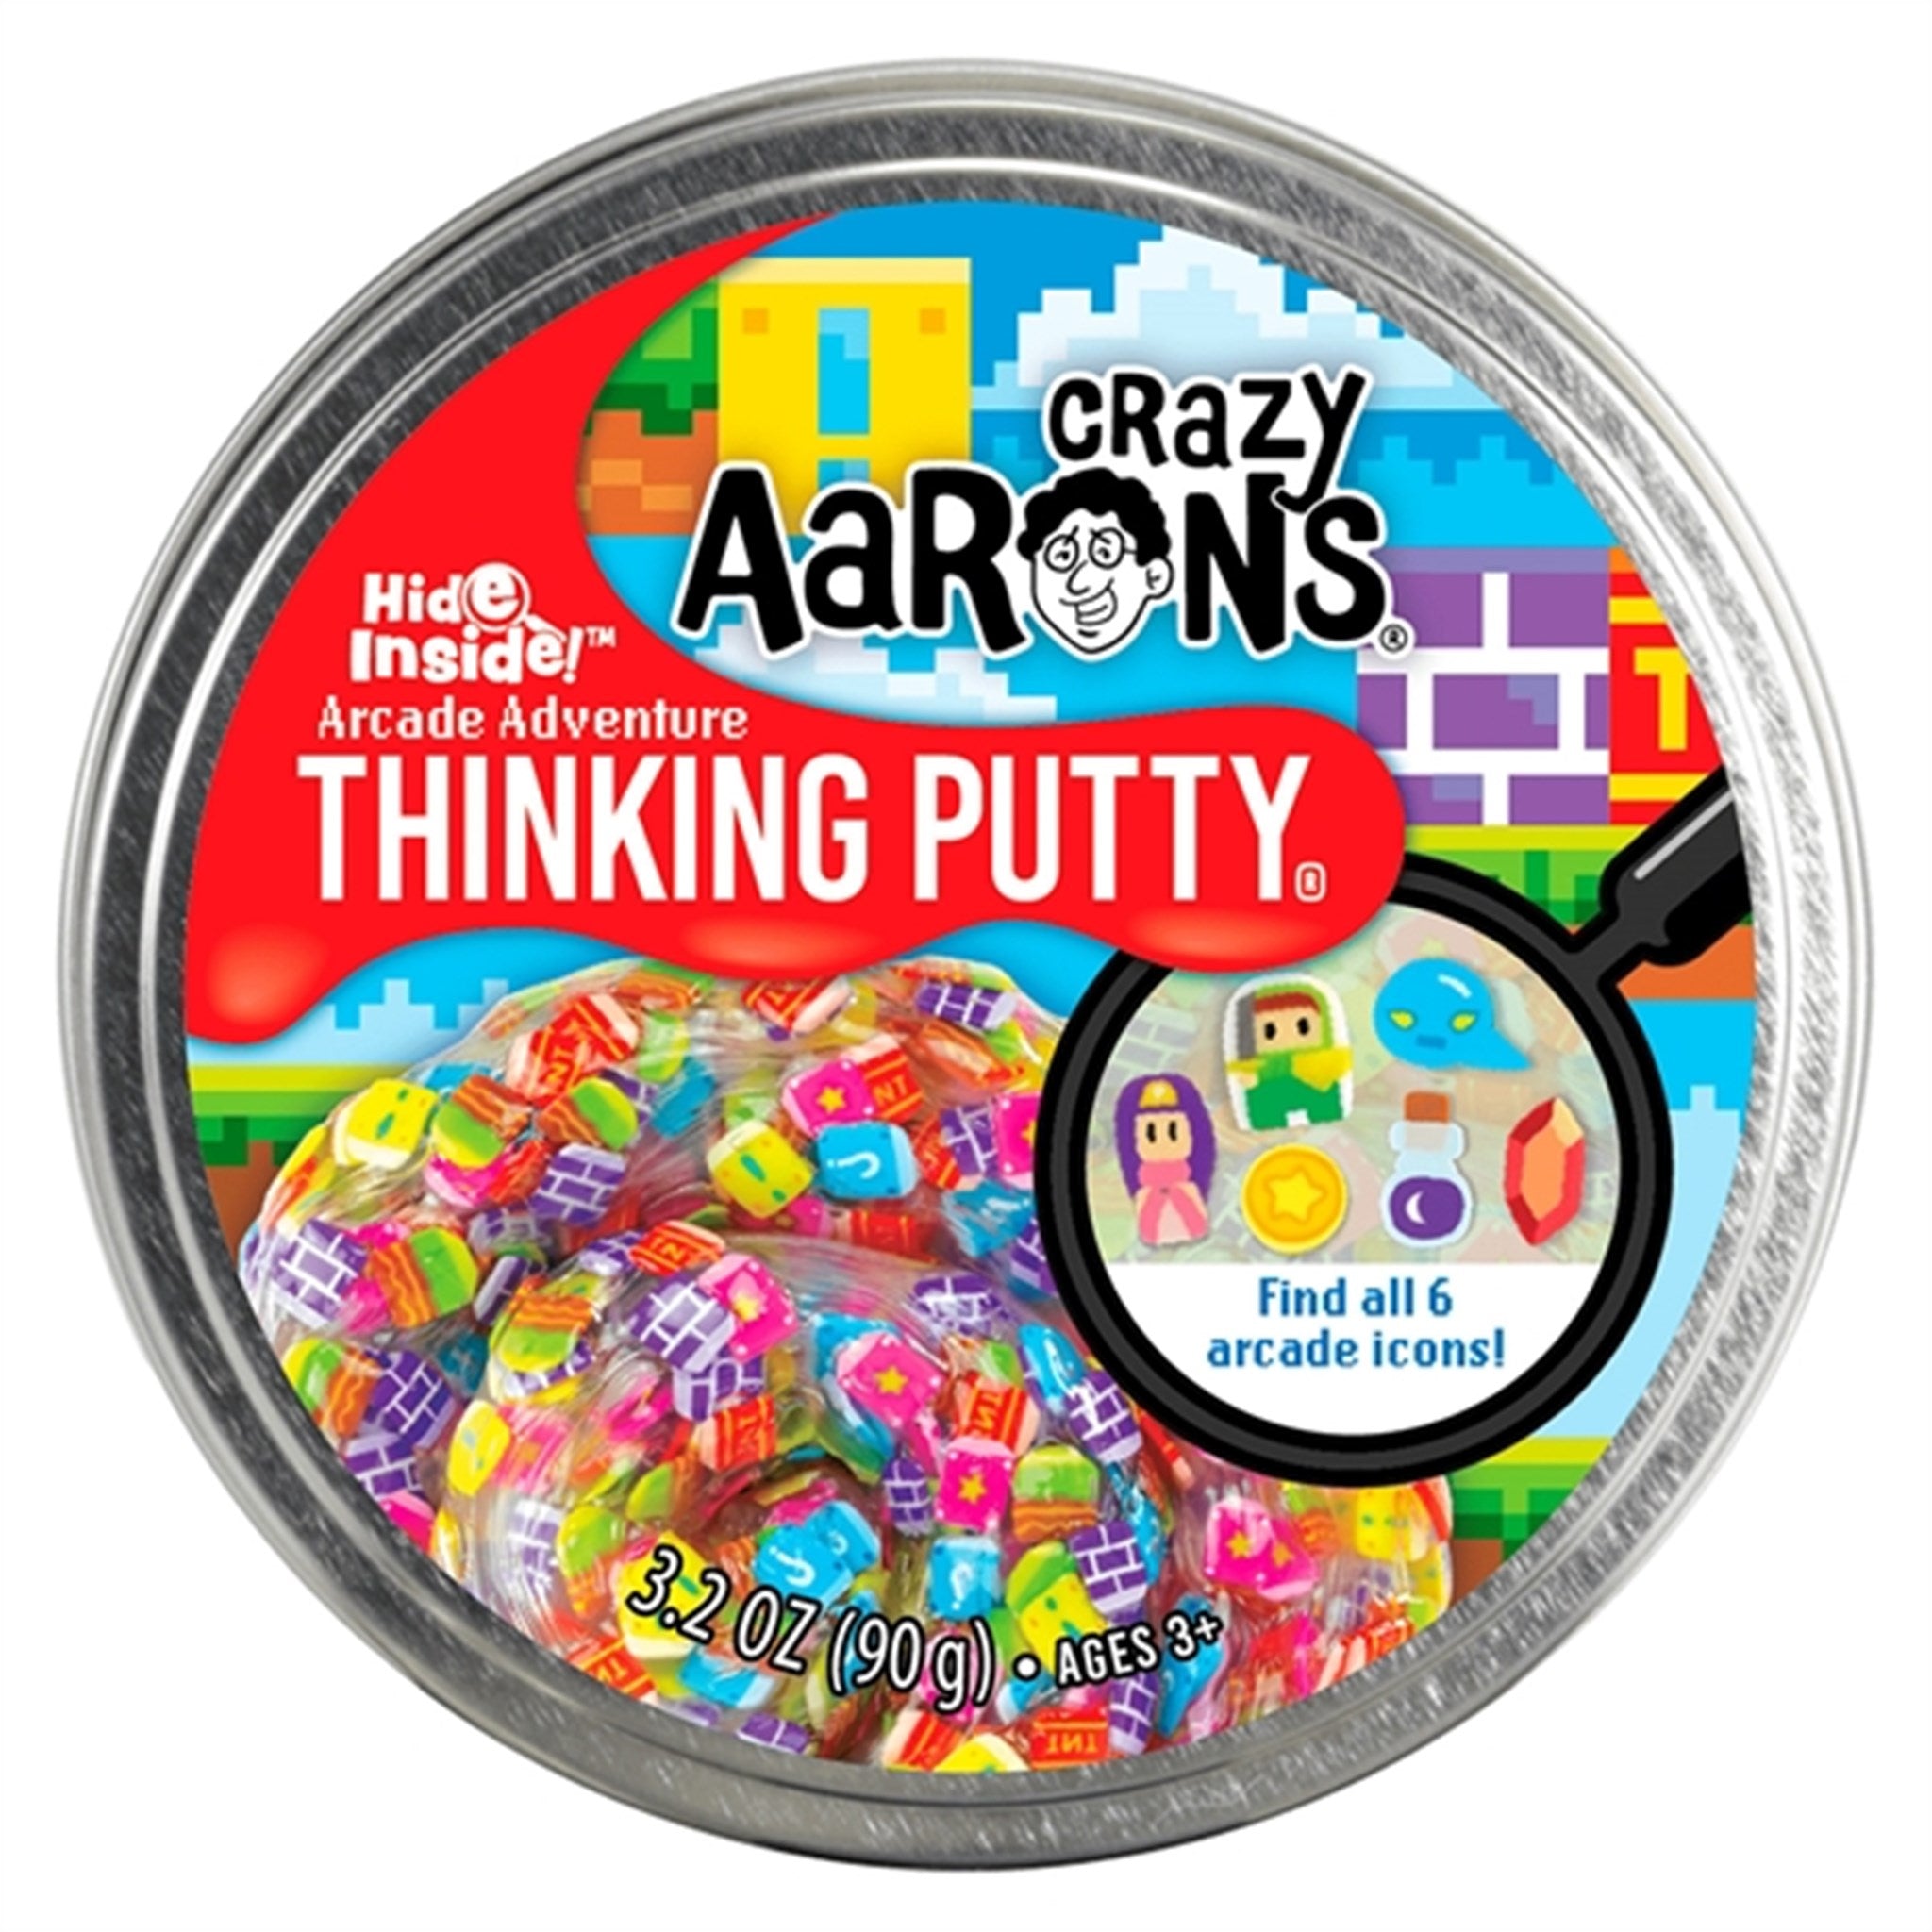 Crazy Aaron's® Slim - Thinking Putty Hide Inside! - Arcade Adventure